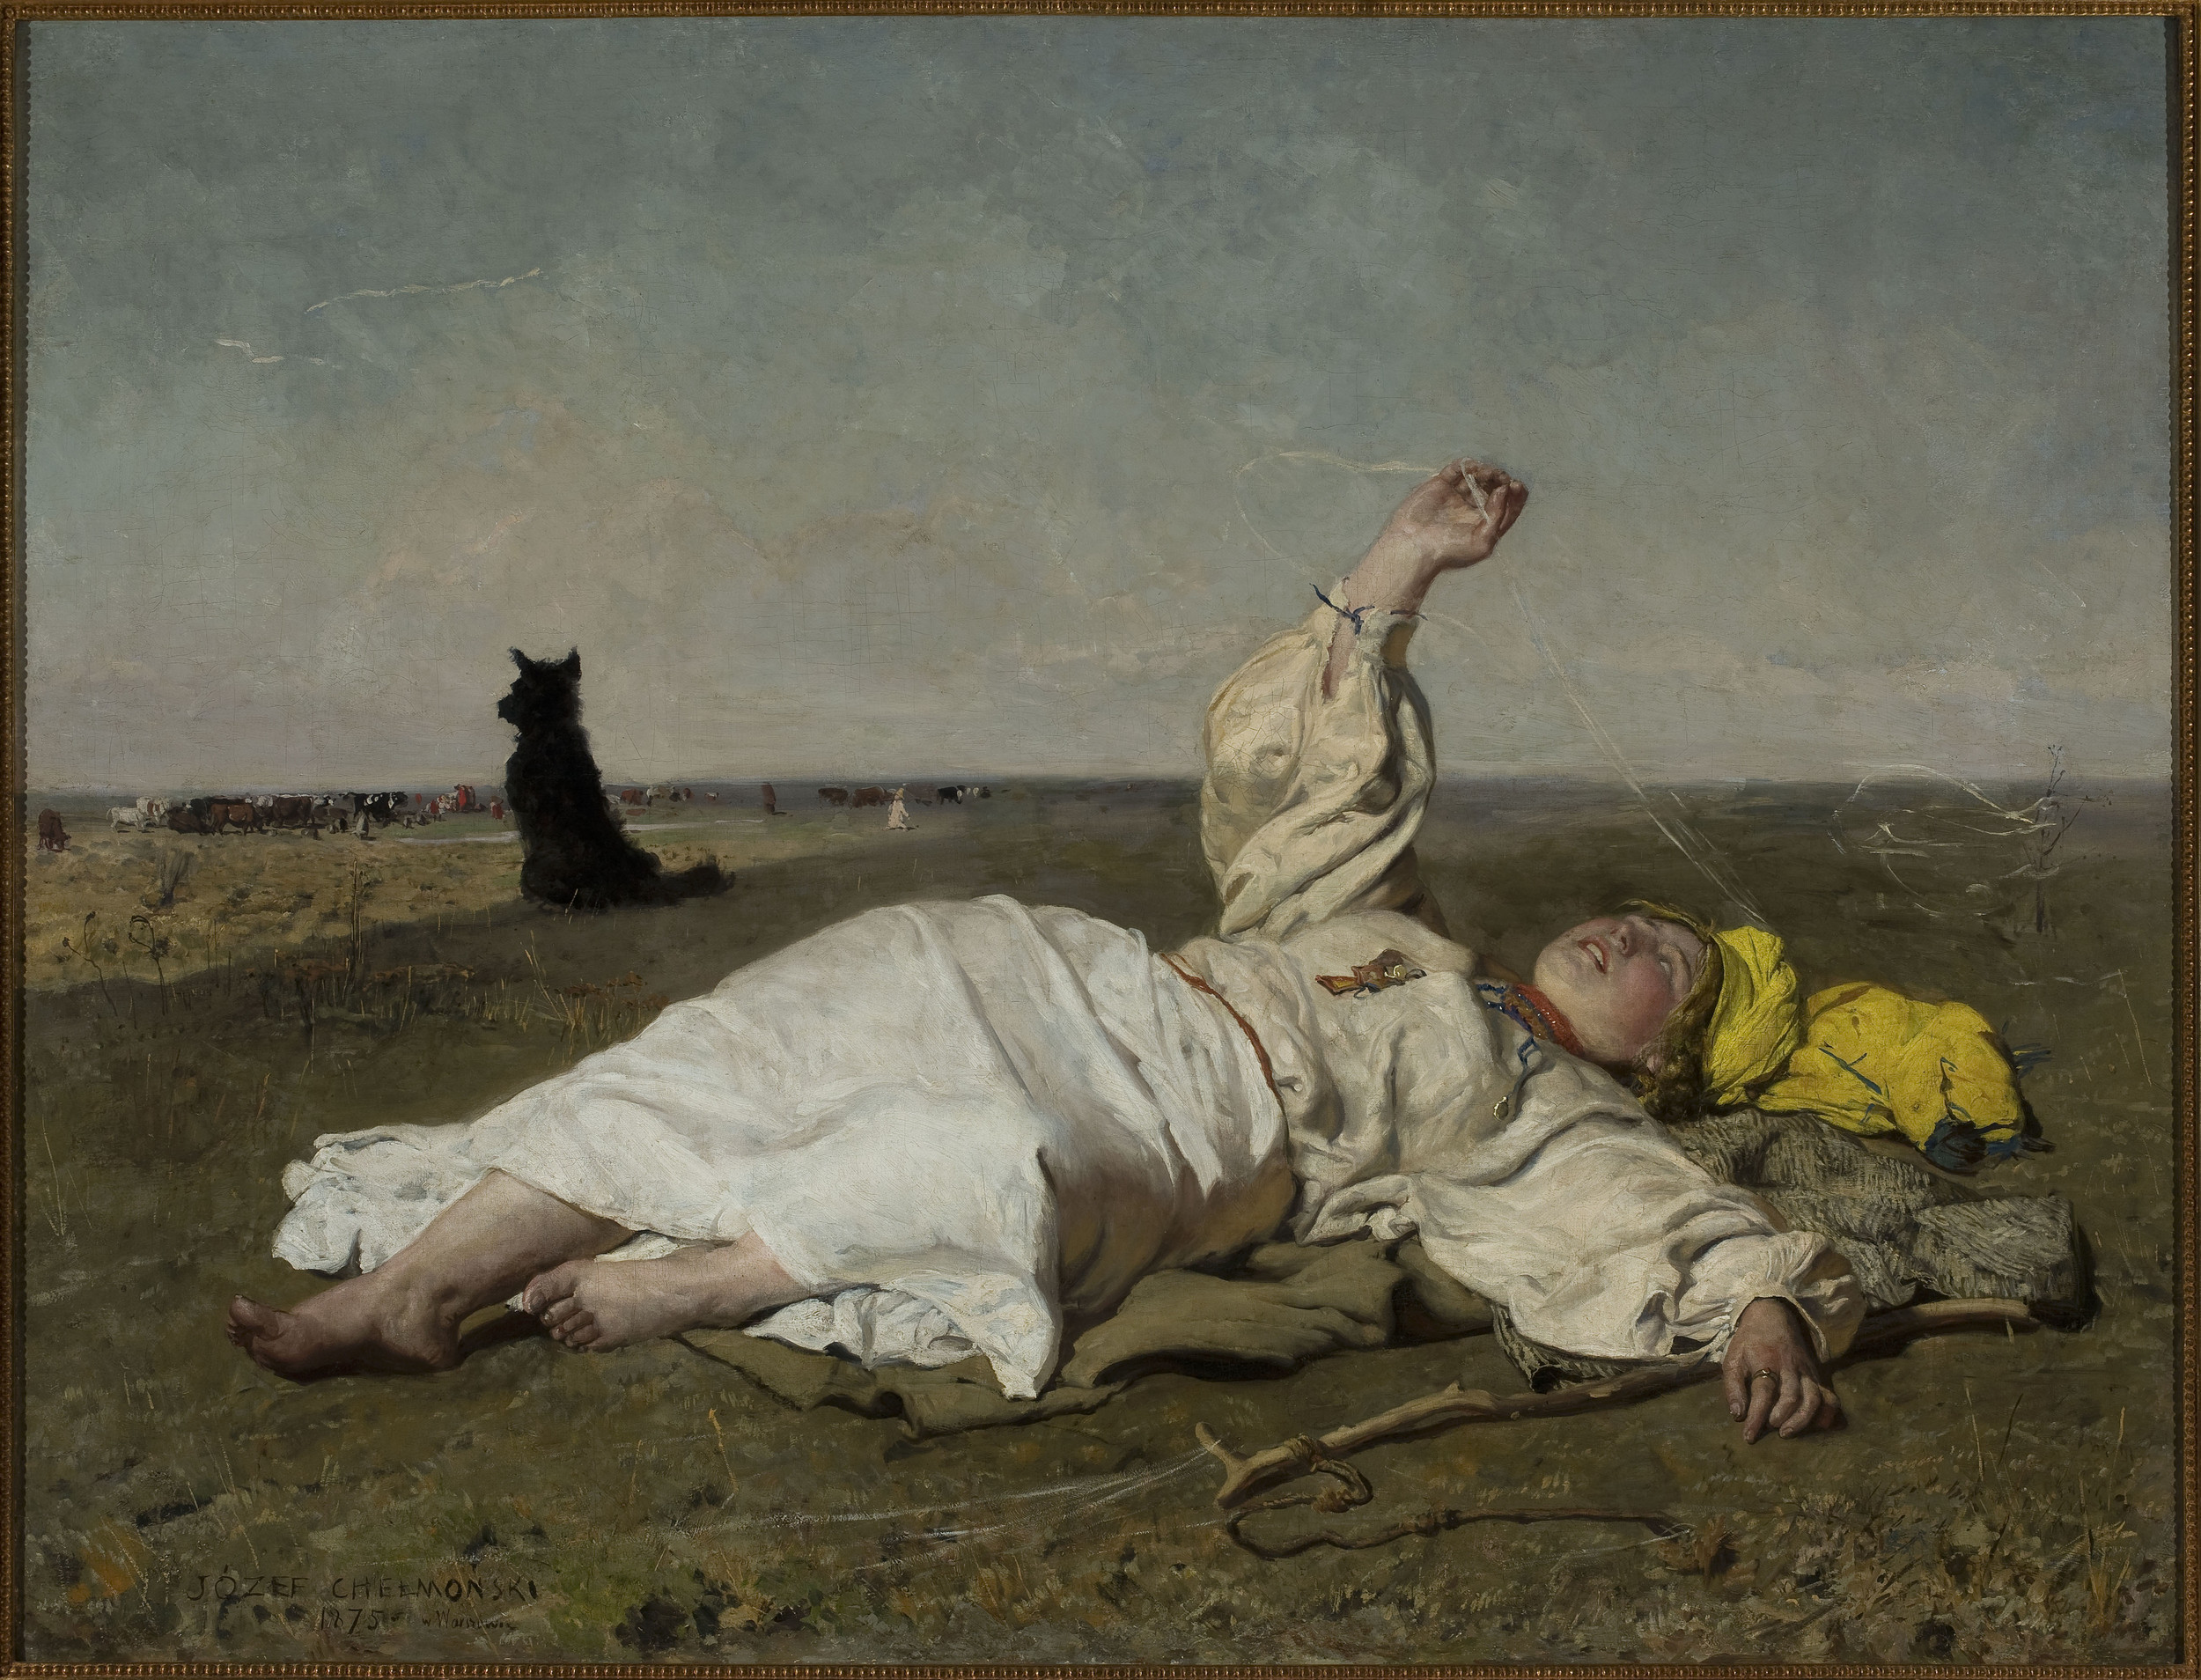 Babie lato by Józef Chełmoński - 1875 - 156 x 119,5 cm 